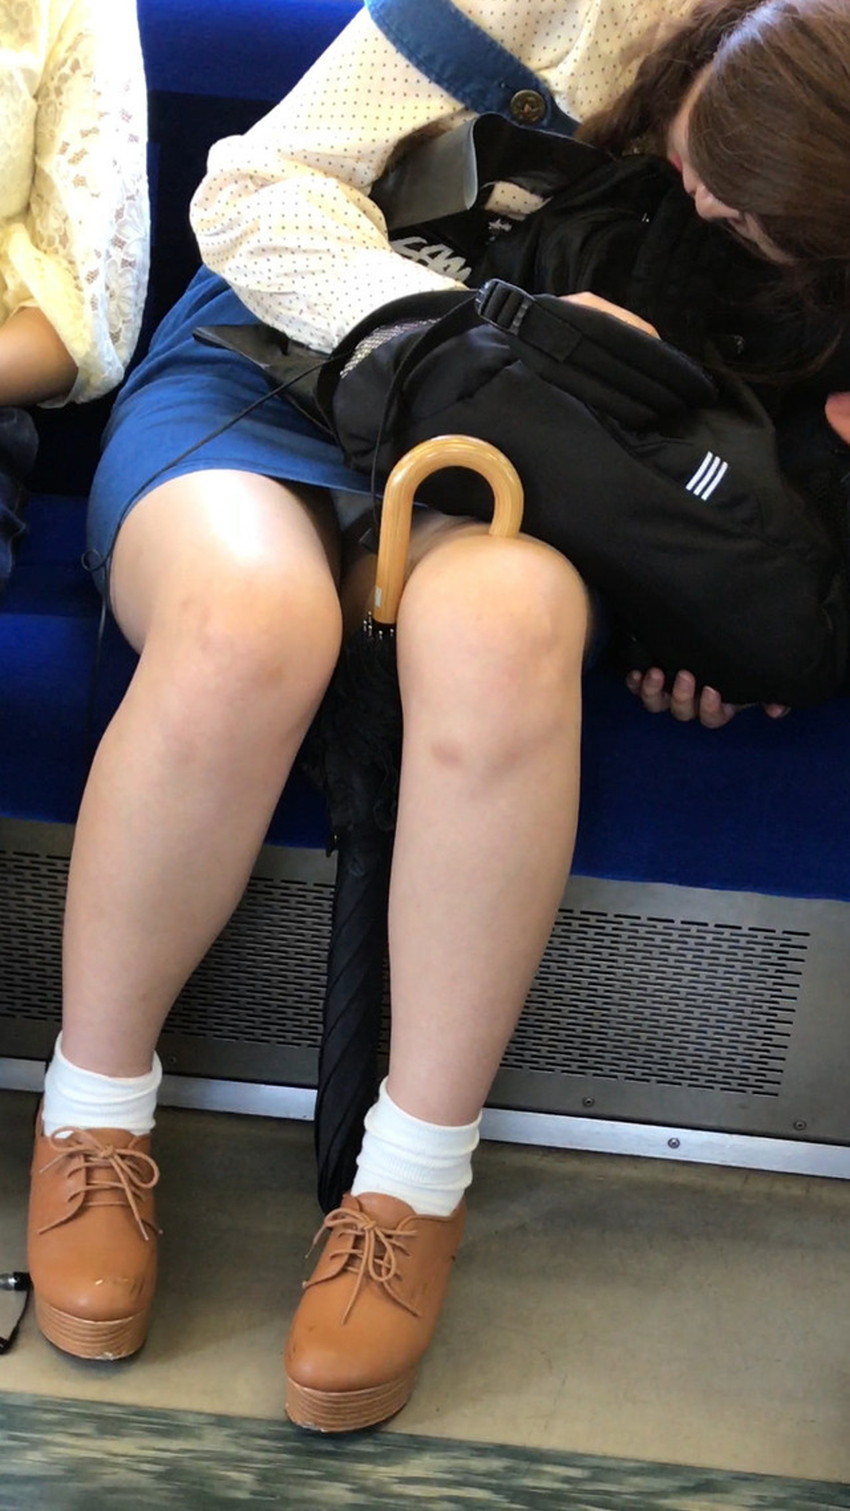 【居眠りパンチラエロ画像】居眠りOLが電車内でお股ユルユル！ww居眠り美女の無防備なパンチラを盗撮した居眠りパンチラのエロ画像集！ww【80枚】 20